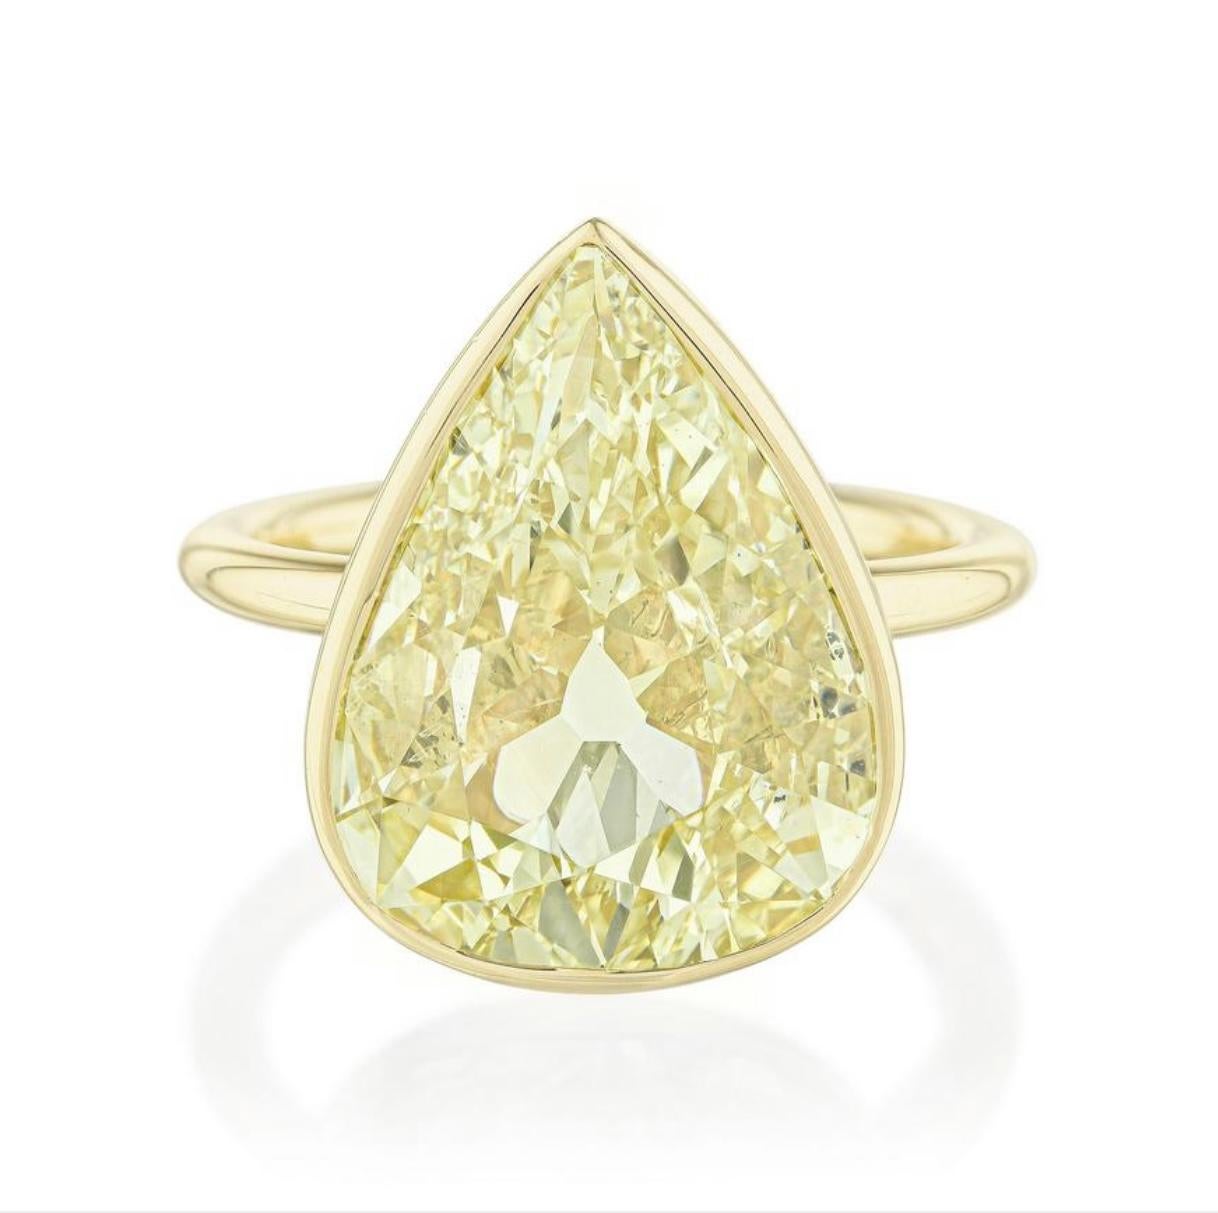 Bague en or jaune 18k avec diamant poire de couleur jaune fantaisie, certifiée par le GIA. 

Les détails sont les suivants : 
Poids du diamant poire : 6,02 carats
Couleur : jaune fantaisie 
Clarté : SI1 
Dimensions : 16.08mmx12.28mmx4.63mm
Métal :